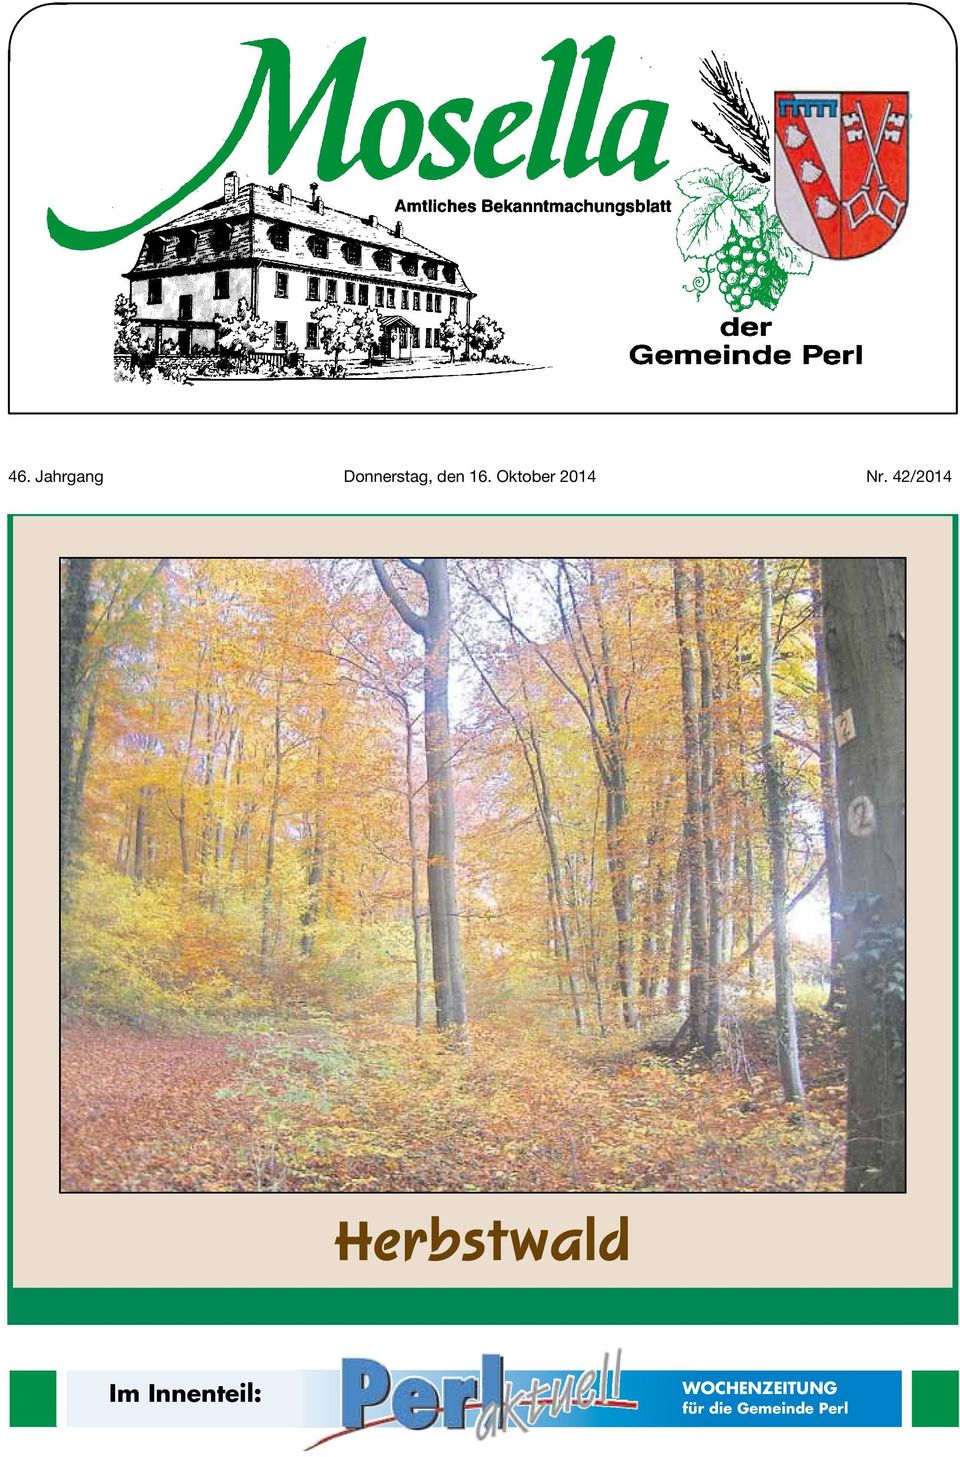 42/2014 Herbstwald Im